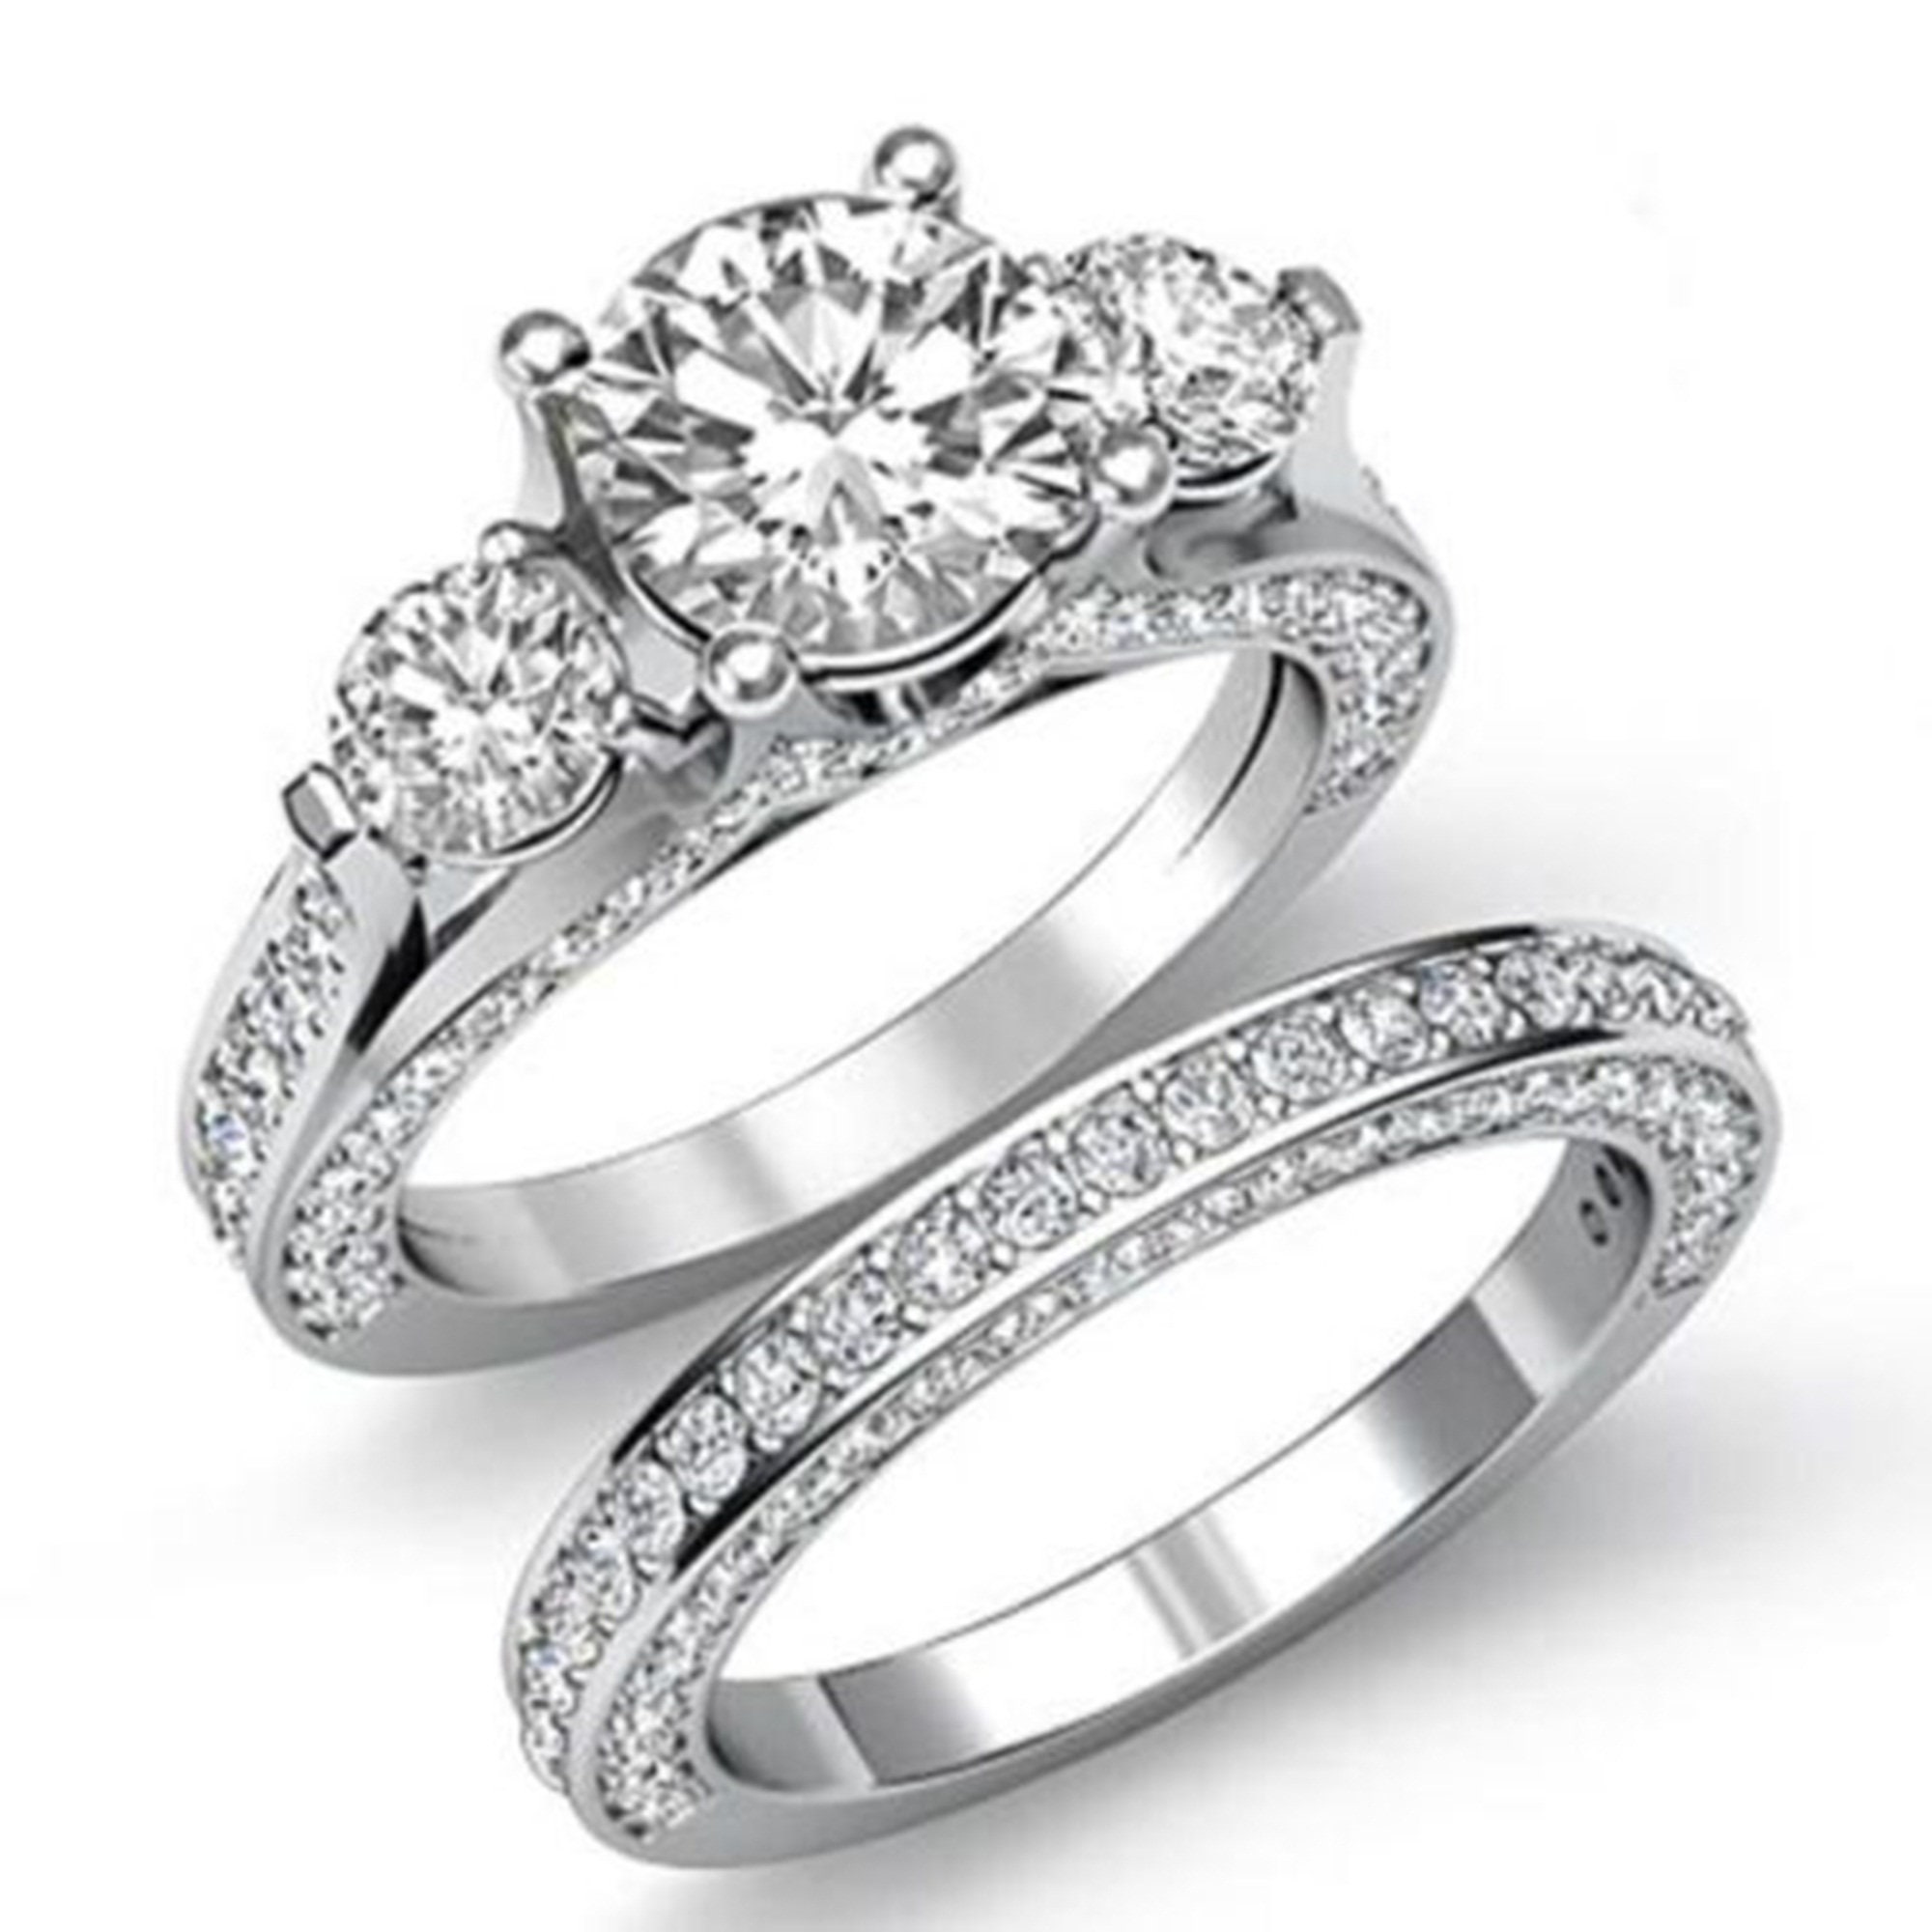 Three Stone Engagement Ring White Round Cut Diamond Ring CZ Diamond Ring Engagement Ring Anniversary Ring Birthday Gift Handmade Ring